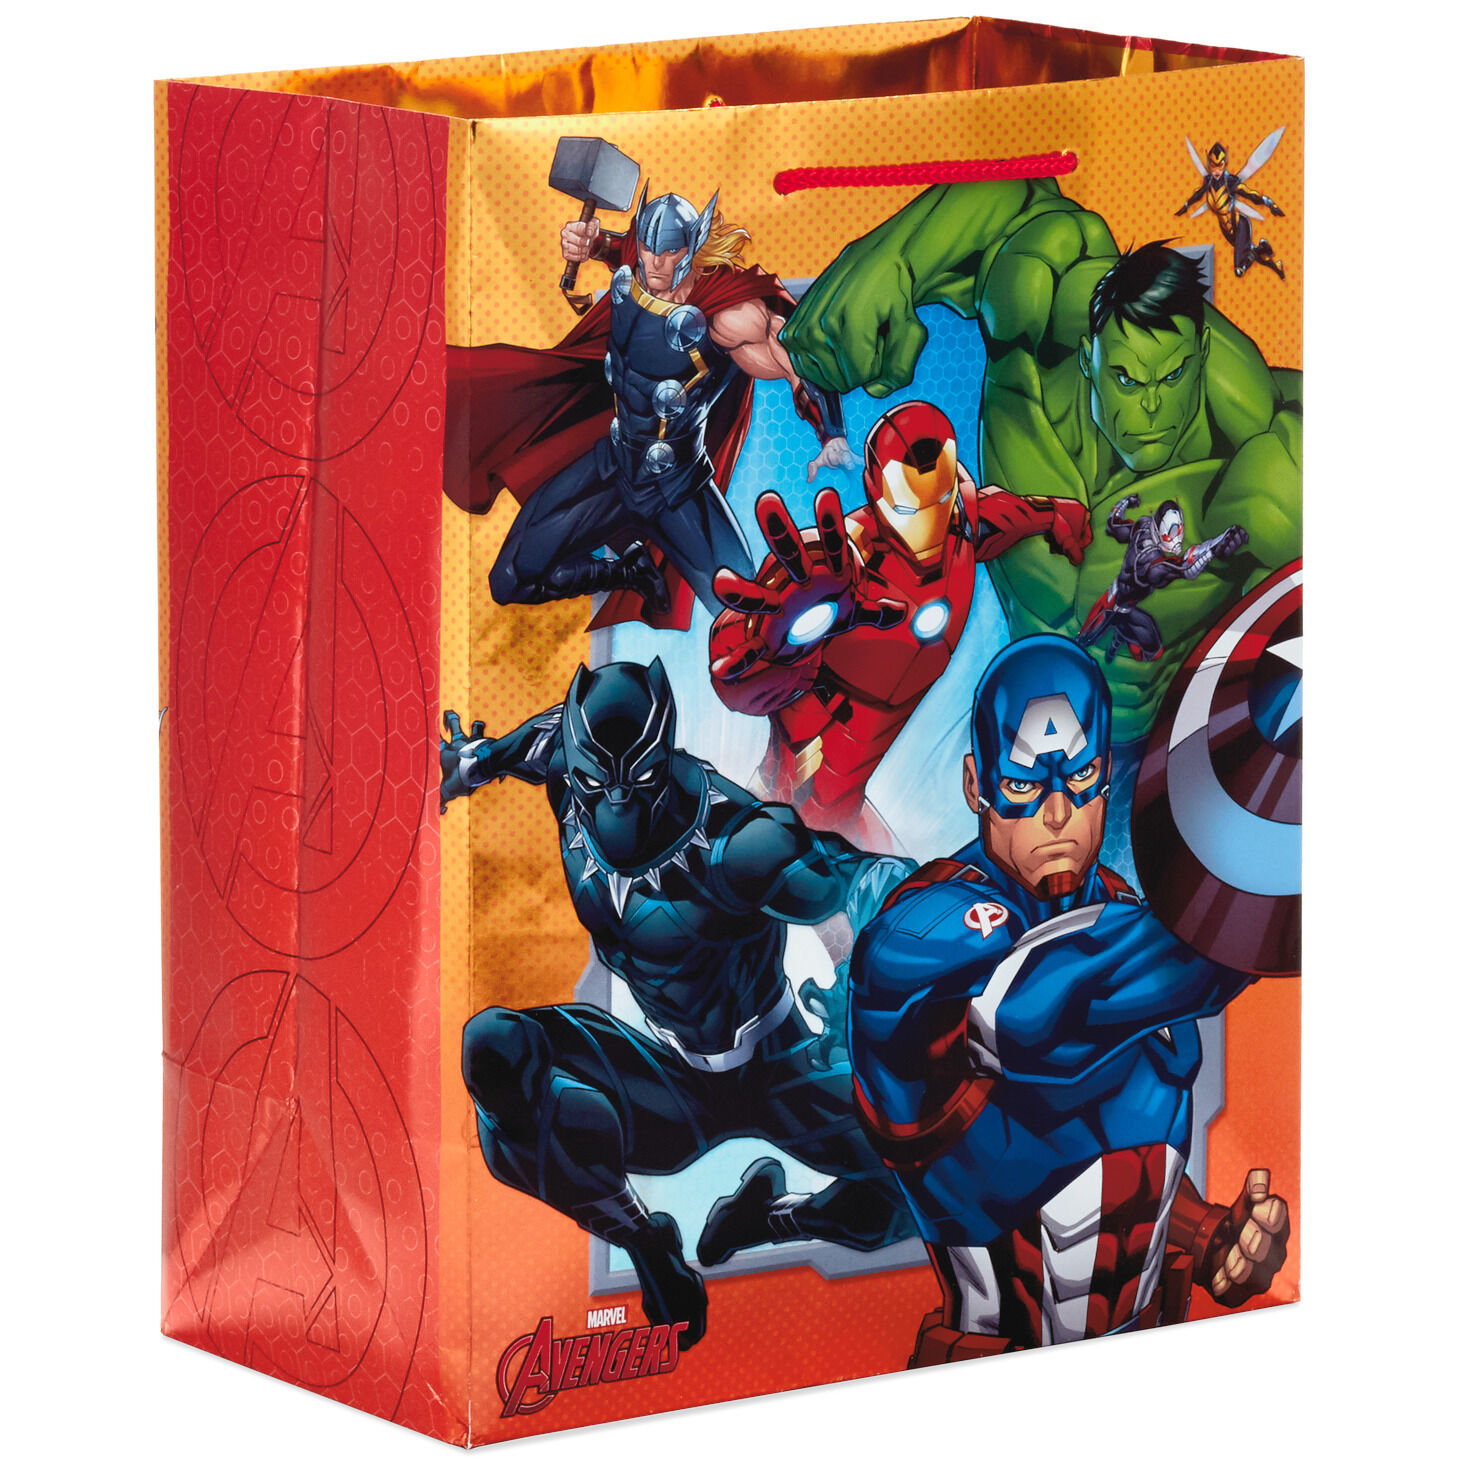 Marvel Avengers Hooded Towel  23"×51"  Captain America Hulk Ironman 